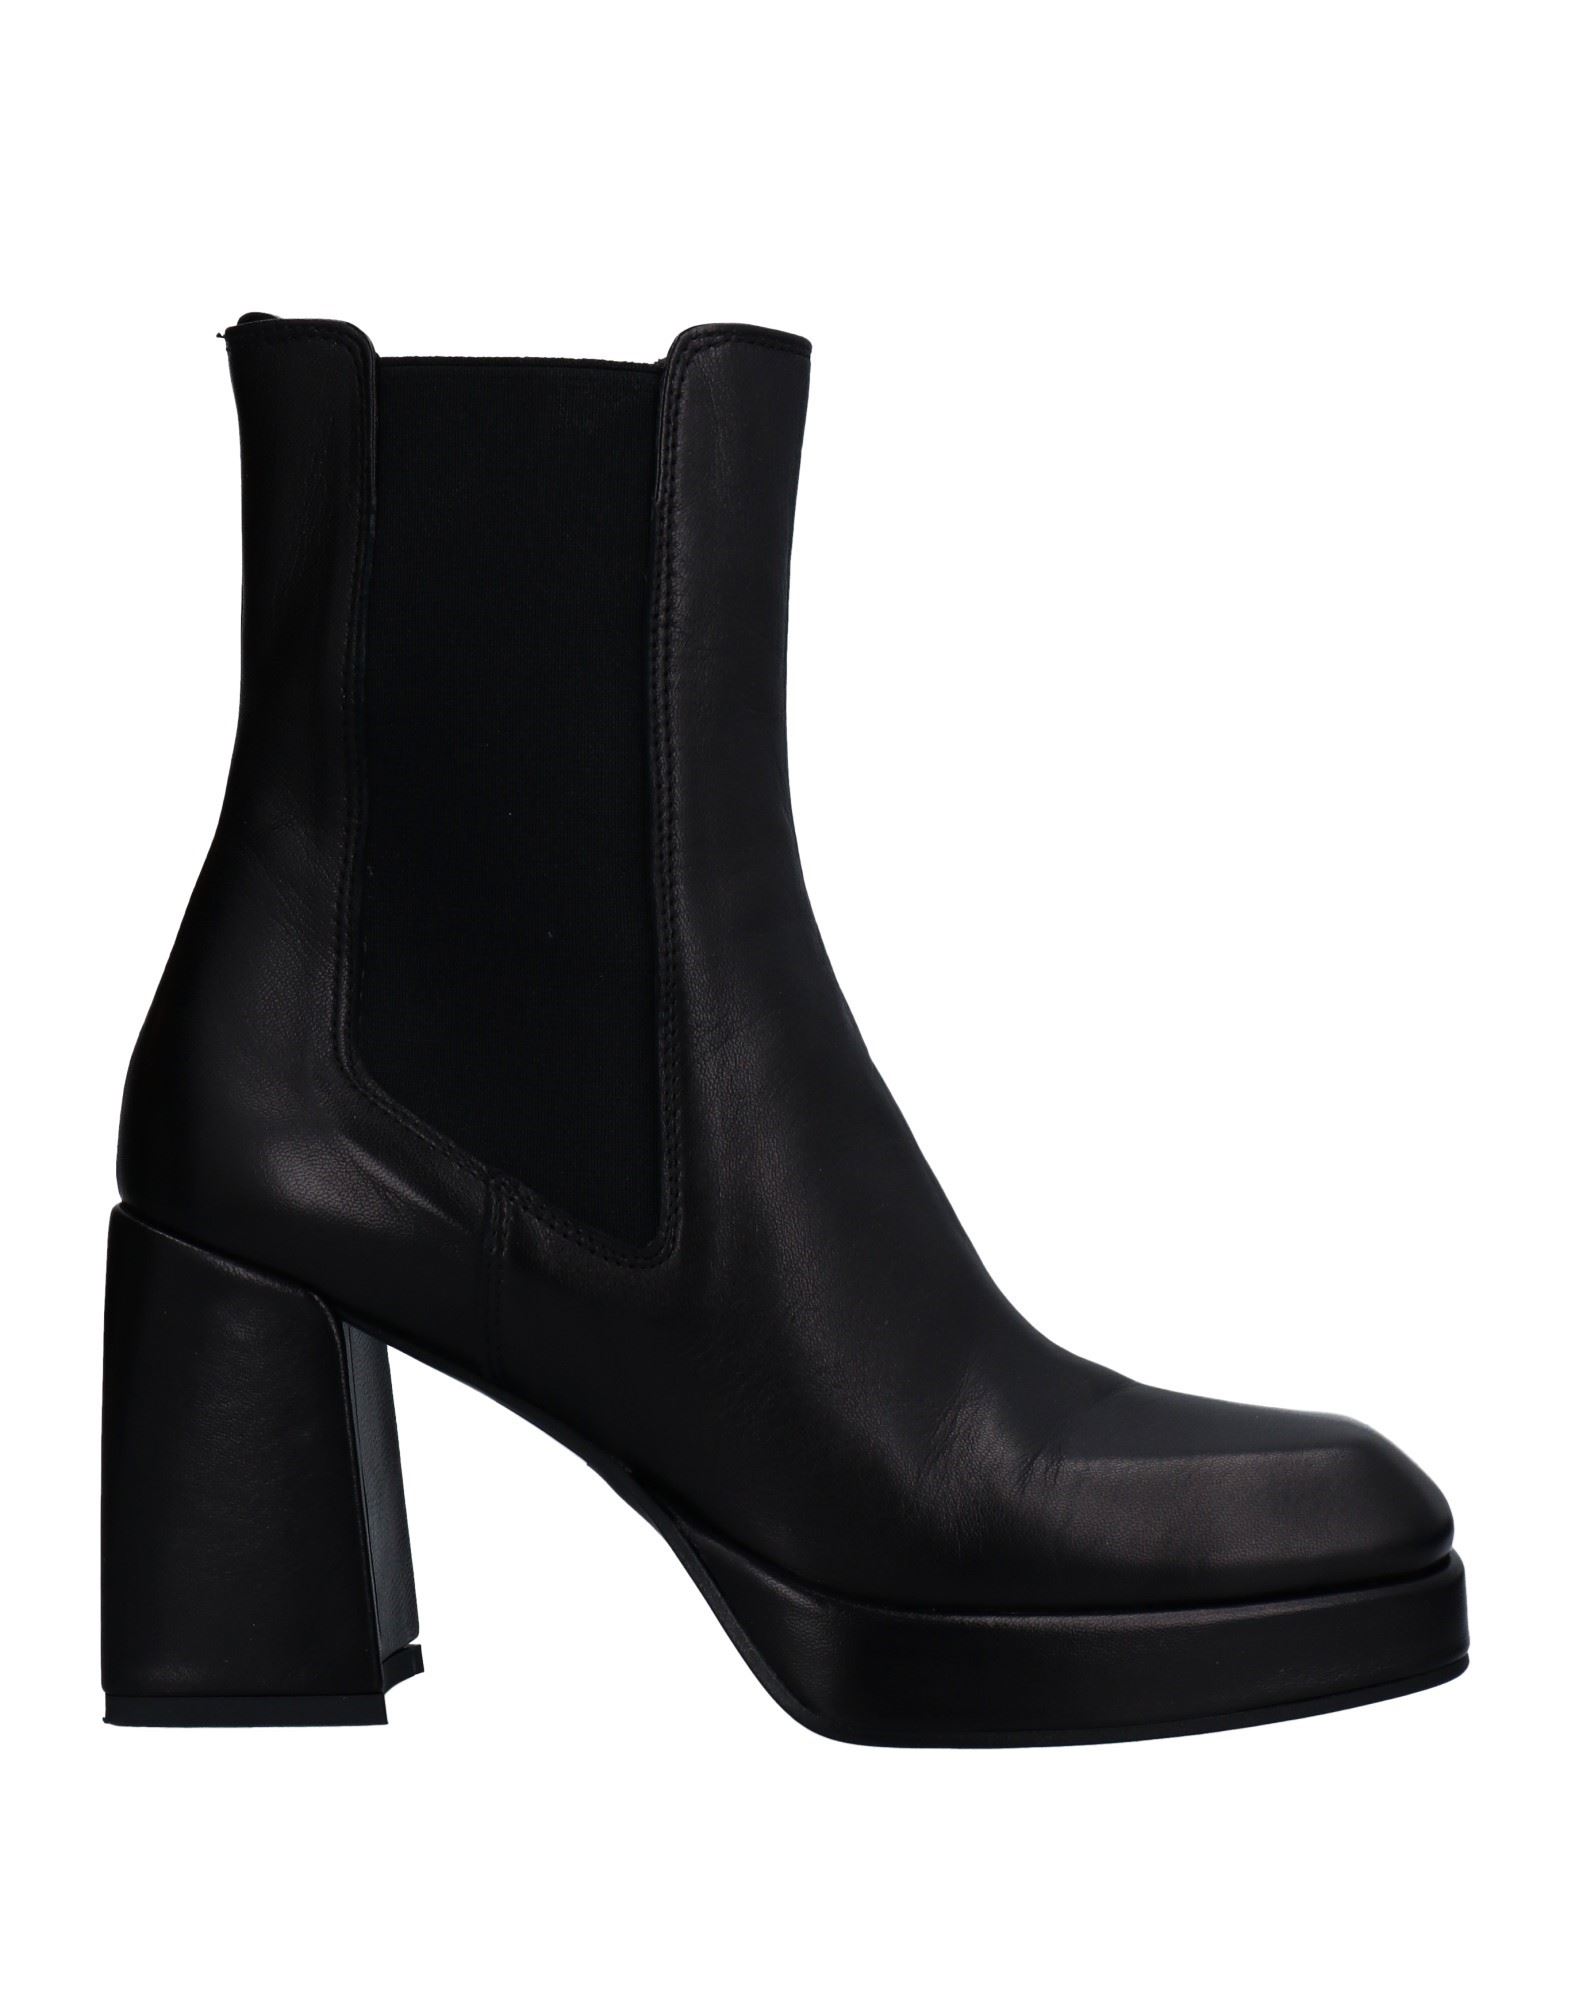 Nila & Nila Ankle Boots In Black